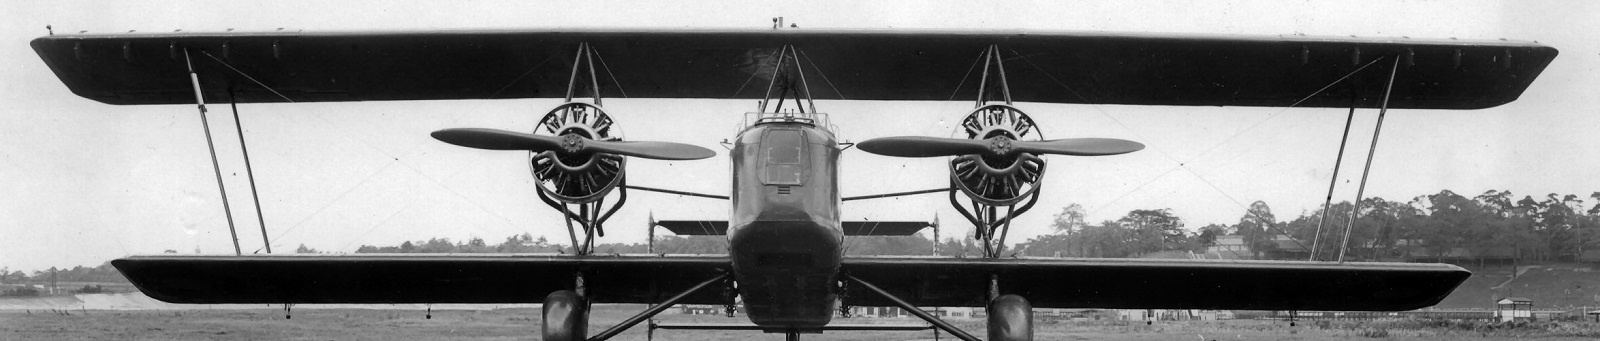 Vickers Type 150 Vanox